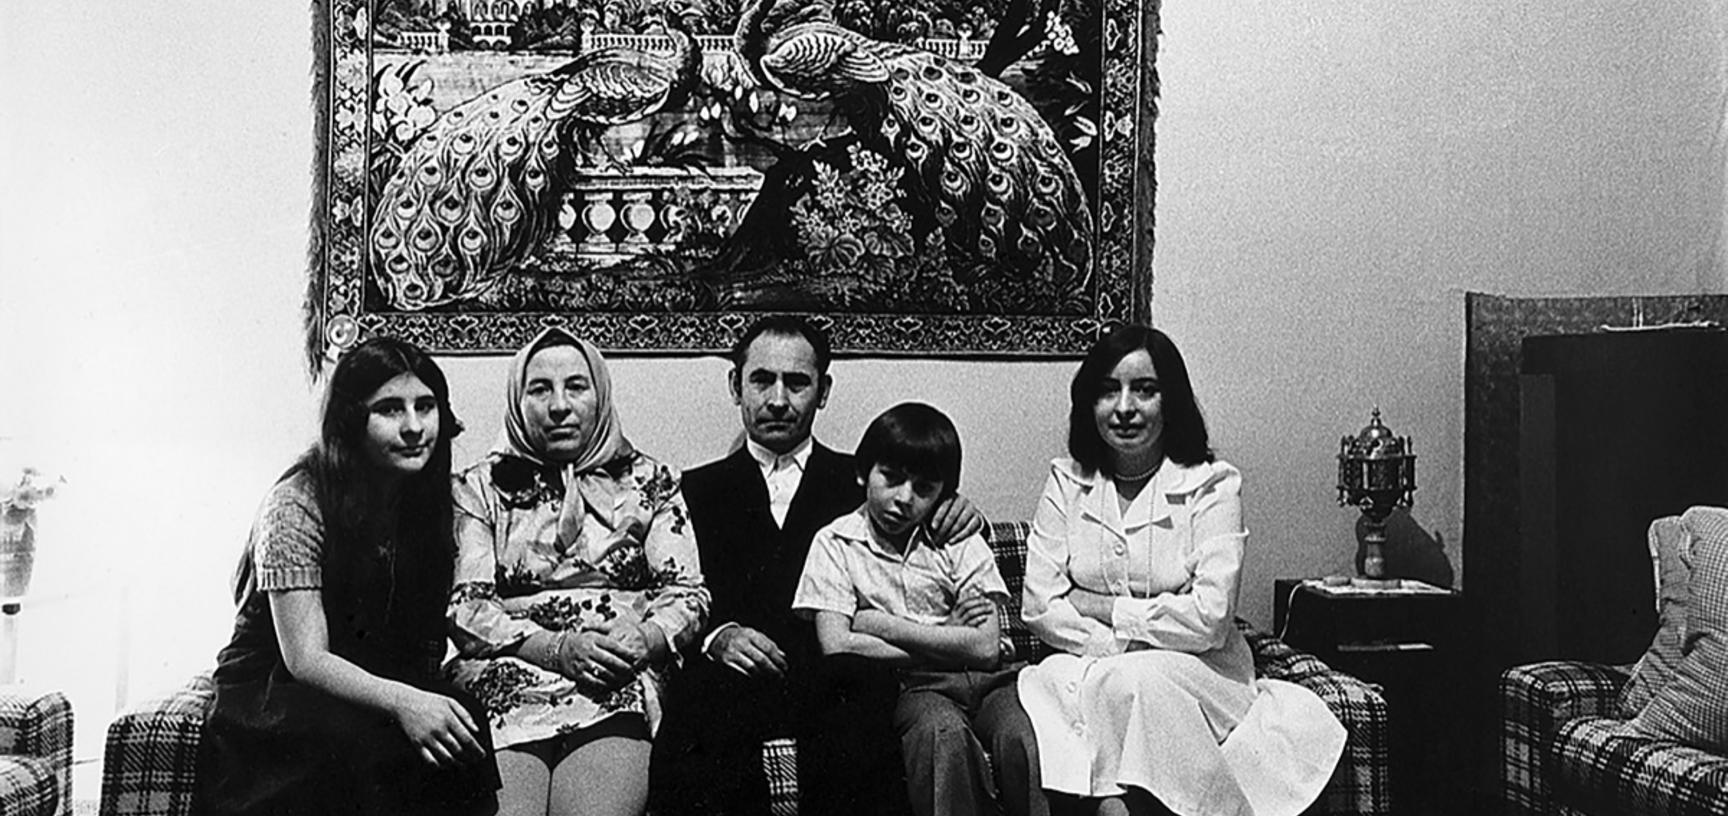 Turkish immigrants family photo